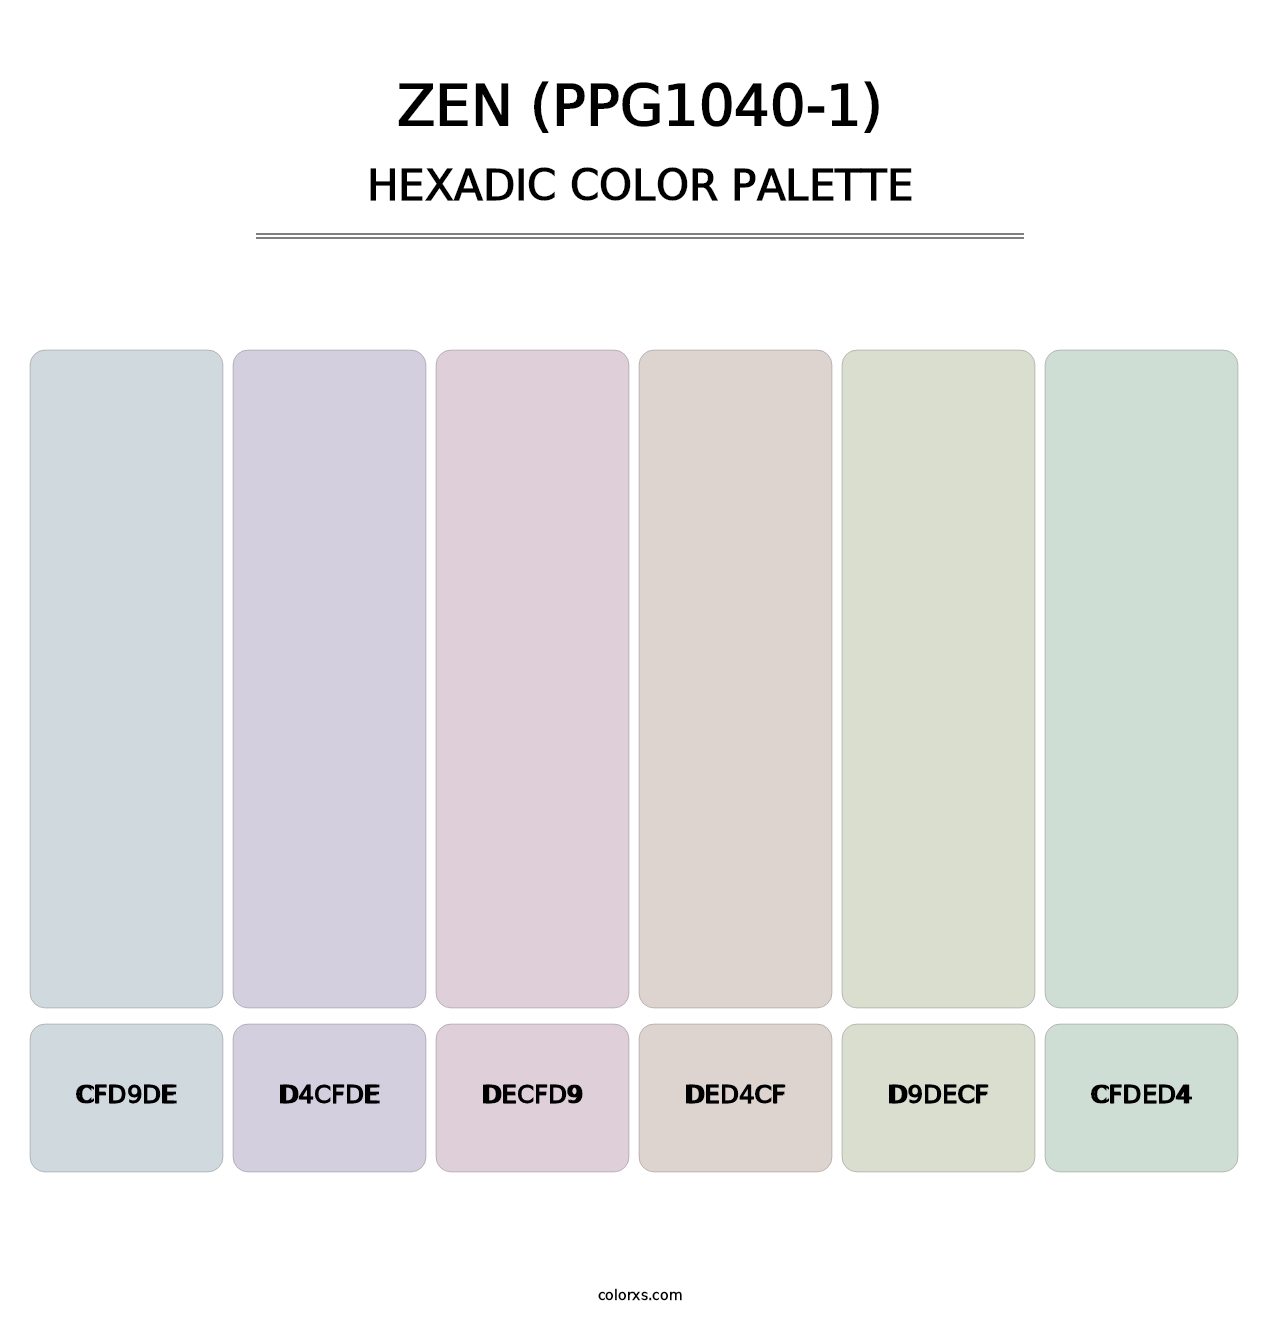 Zen (PPG1040-1) - Hexadic Color Palette